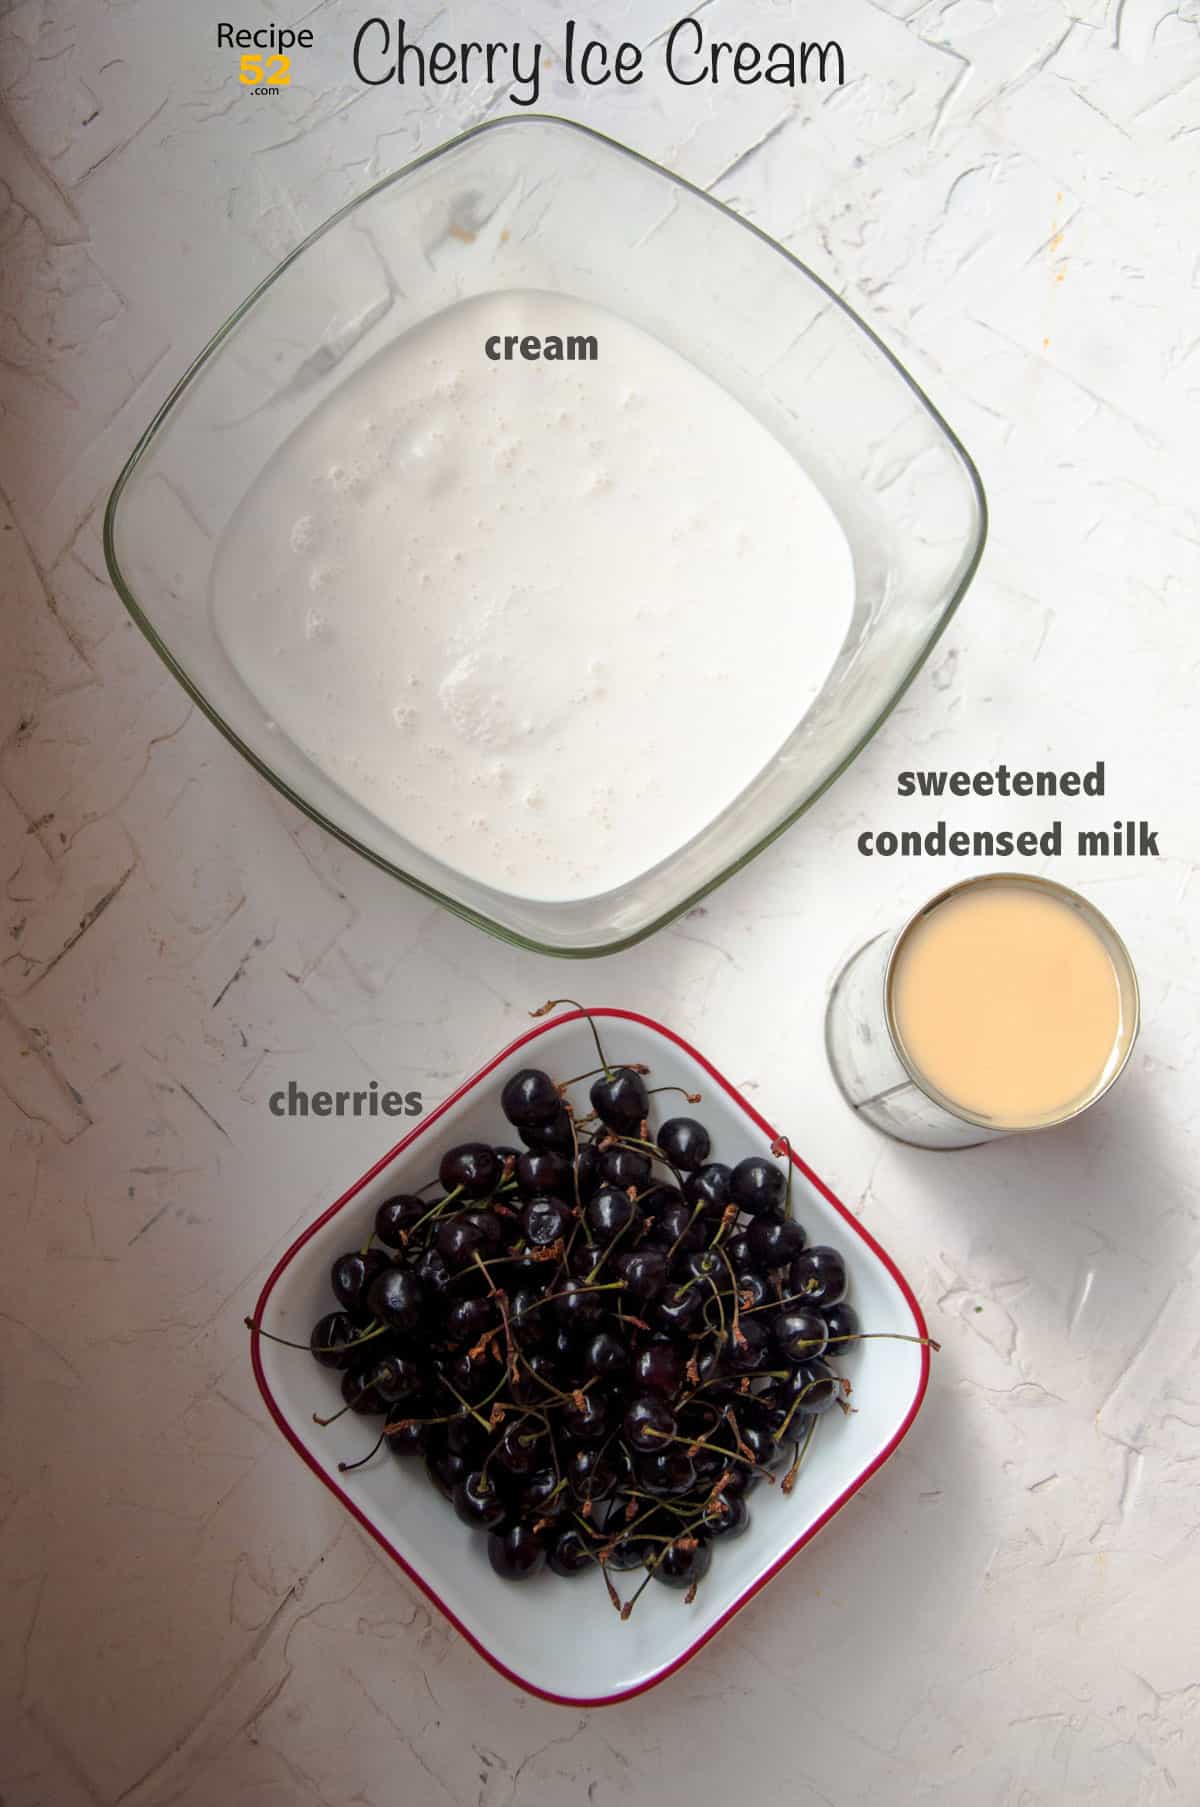 Ingredients of cherry ice cream